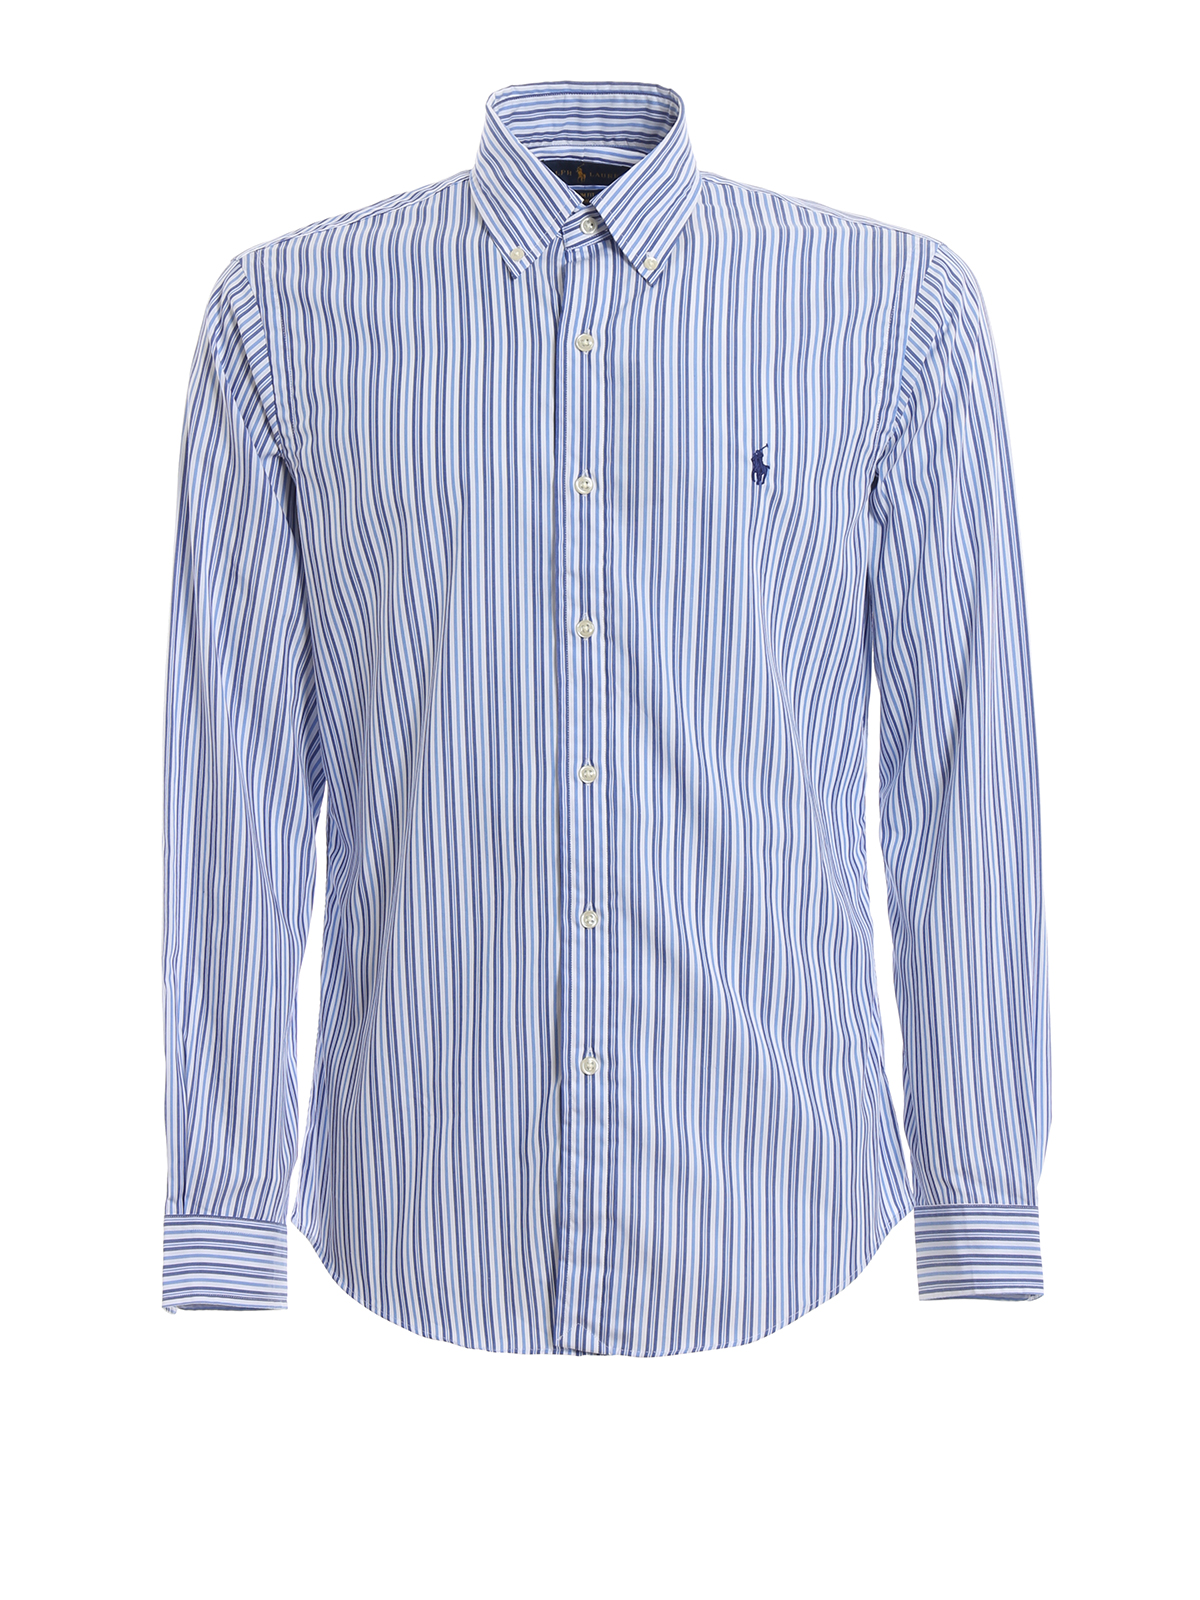 Shirts Polo Ralph Lauren - Light blue striped cotton shirt - 710742463005